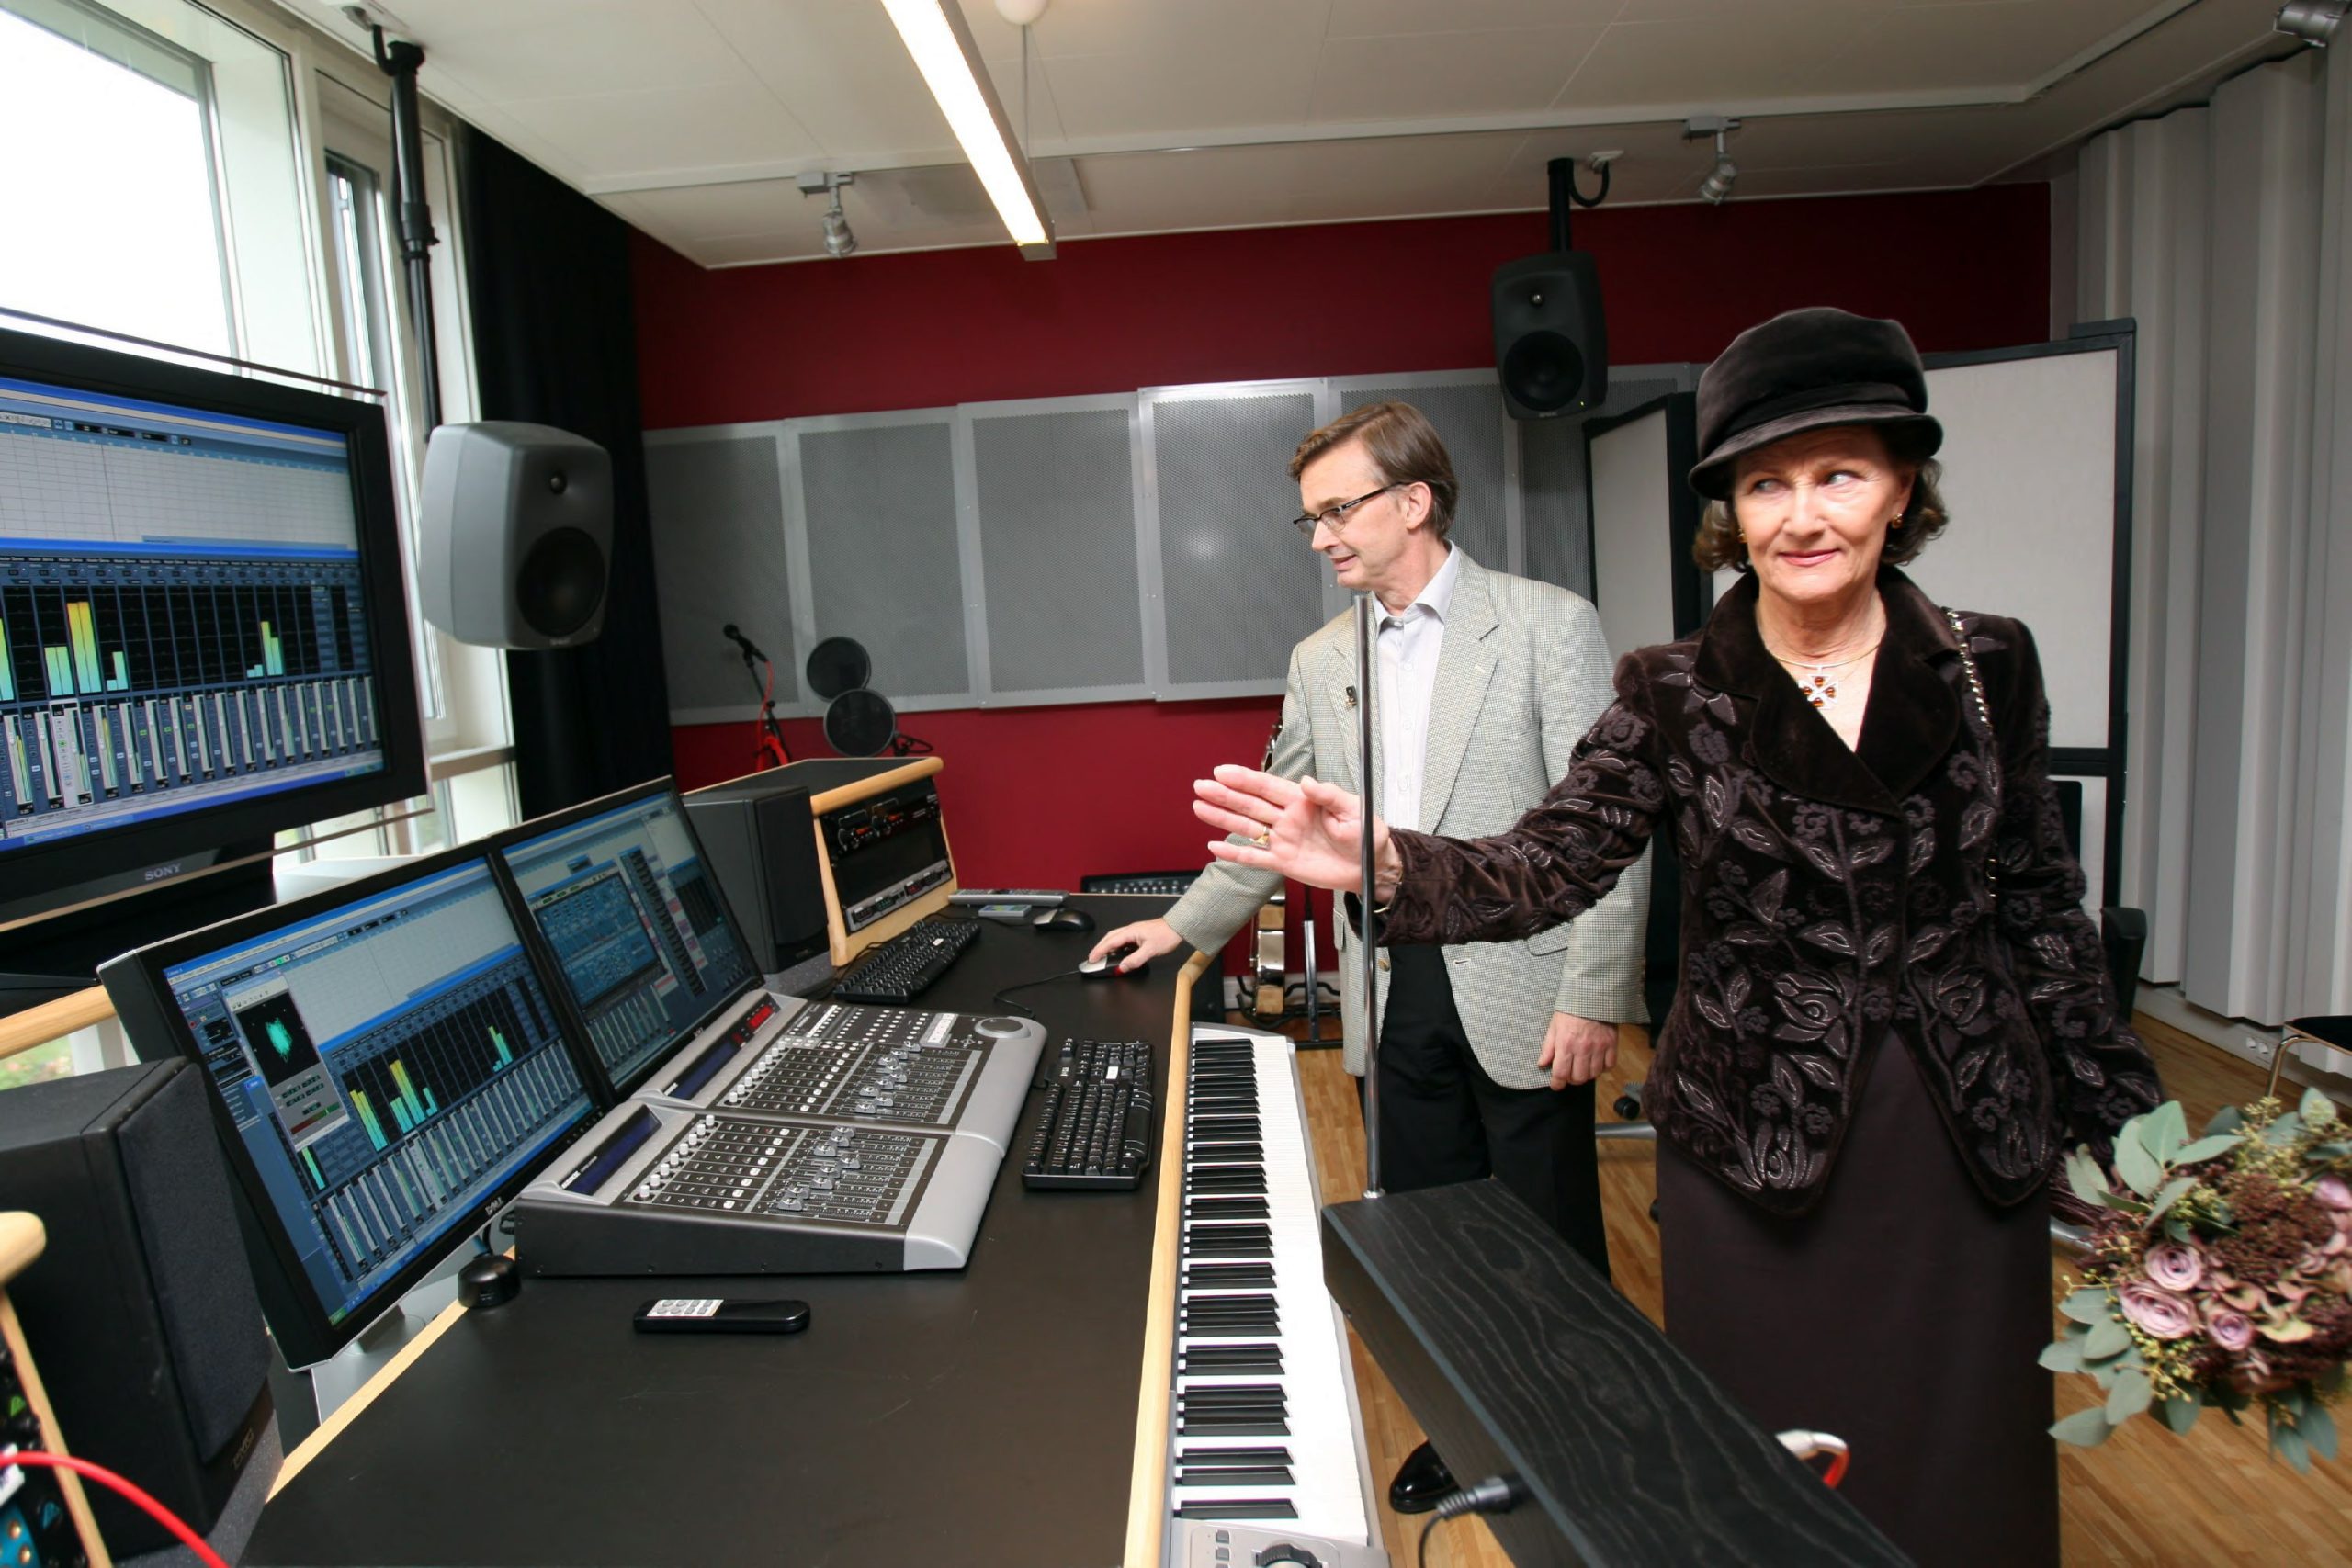 OSLO 20071004: Dronning Sonja åpnet nybygget, 2. hus, på Norges Musikkhøgskole i Oslo. I musikklaboratoriet demonstrerte 1. amansuensis i musikkteknologi, Mats Claesson, en Theremin som er et av de første elektroniske instrumentene. Dronningen fikk selv prøve intrumentet.